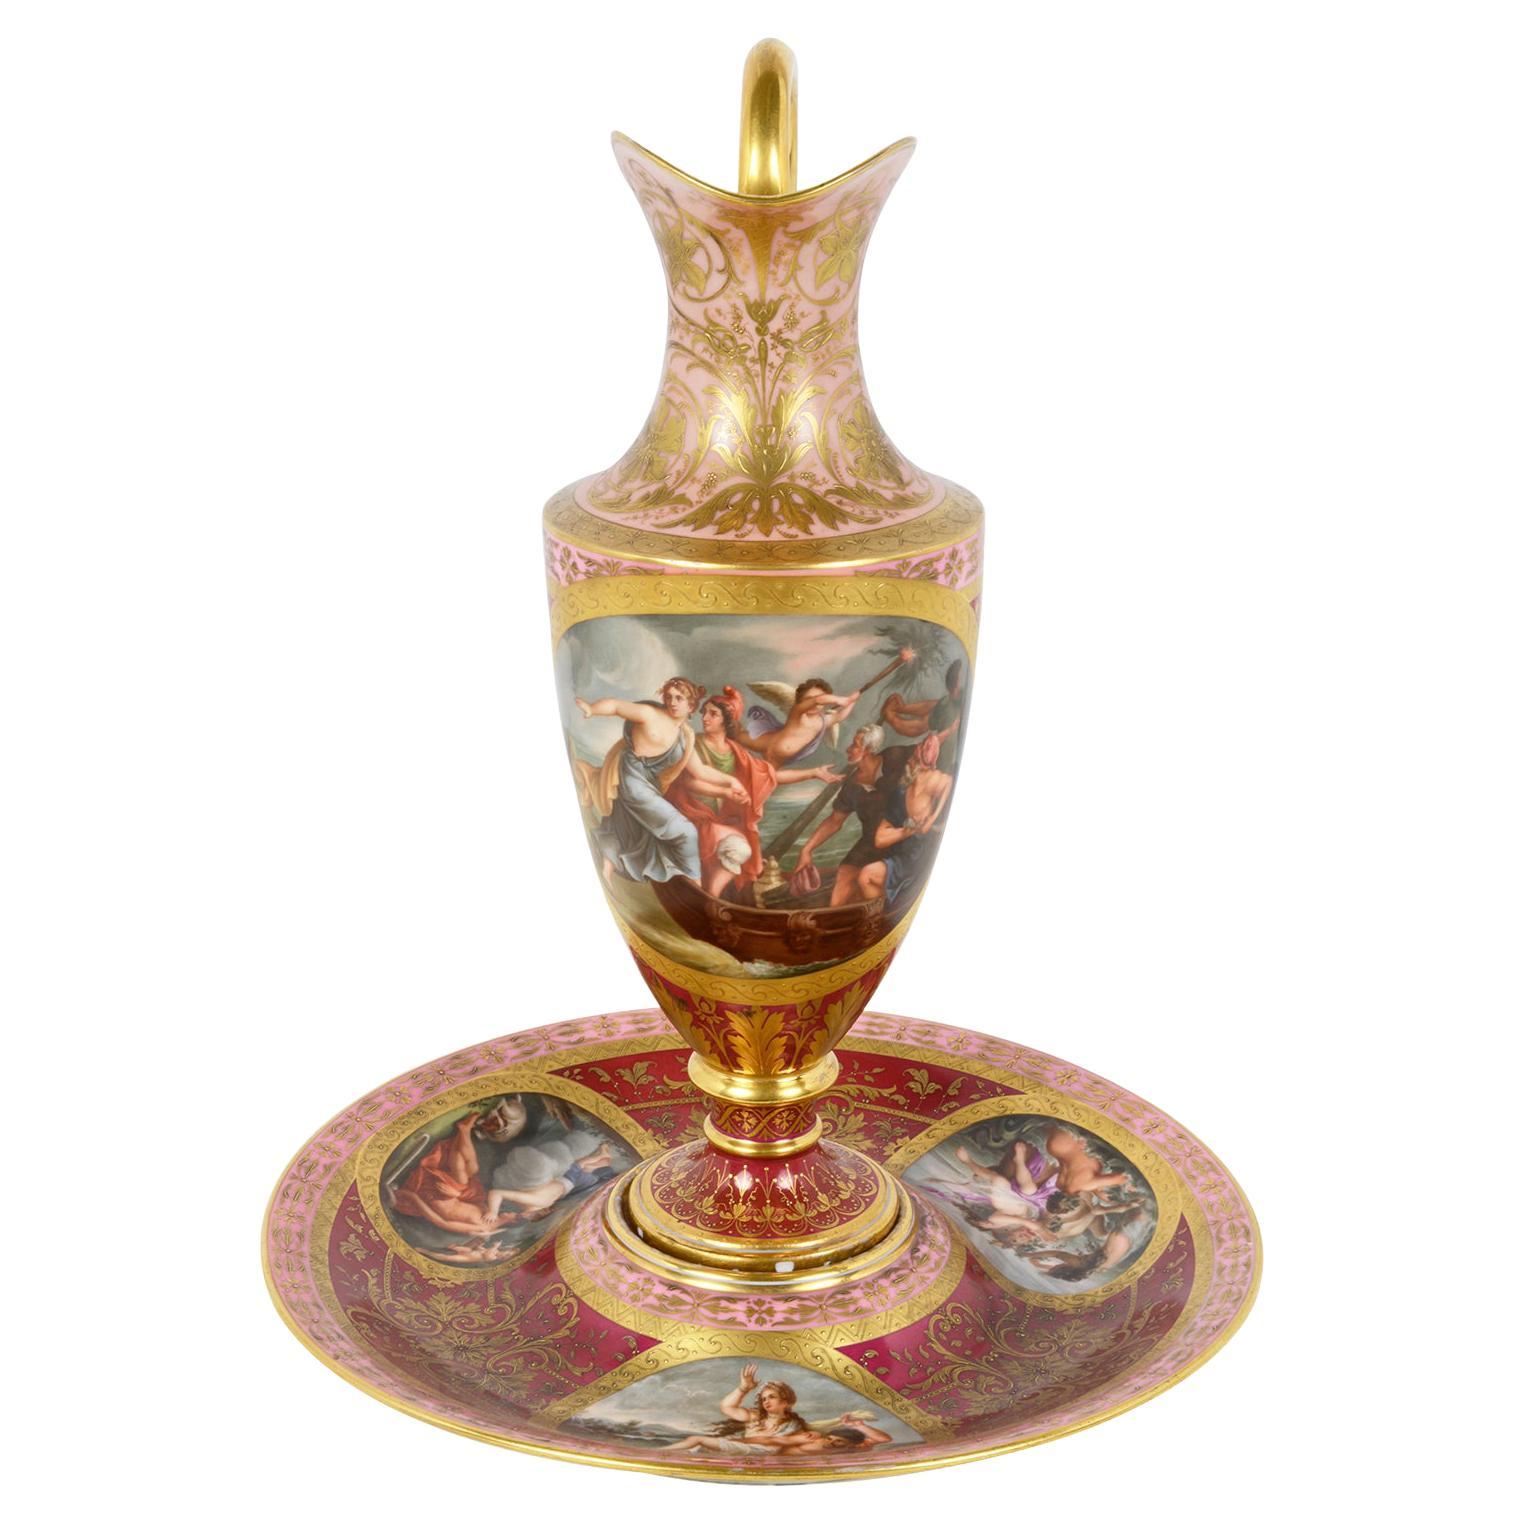 Wiener Porzellanschalen und -geschirr aus dem 19. Jahrhundert